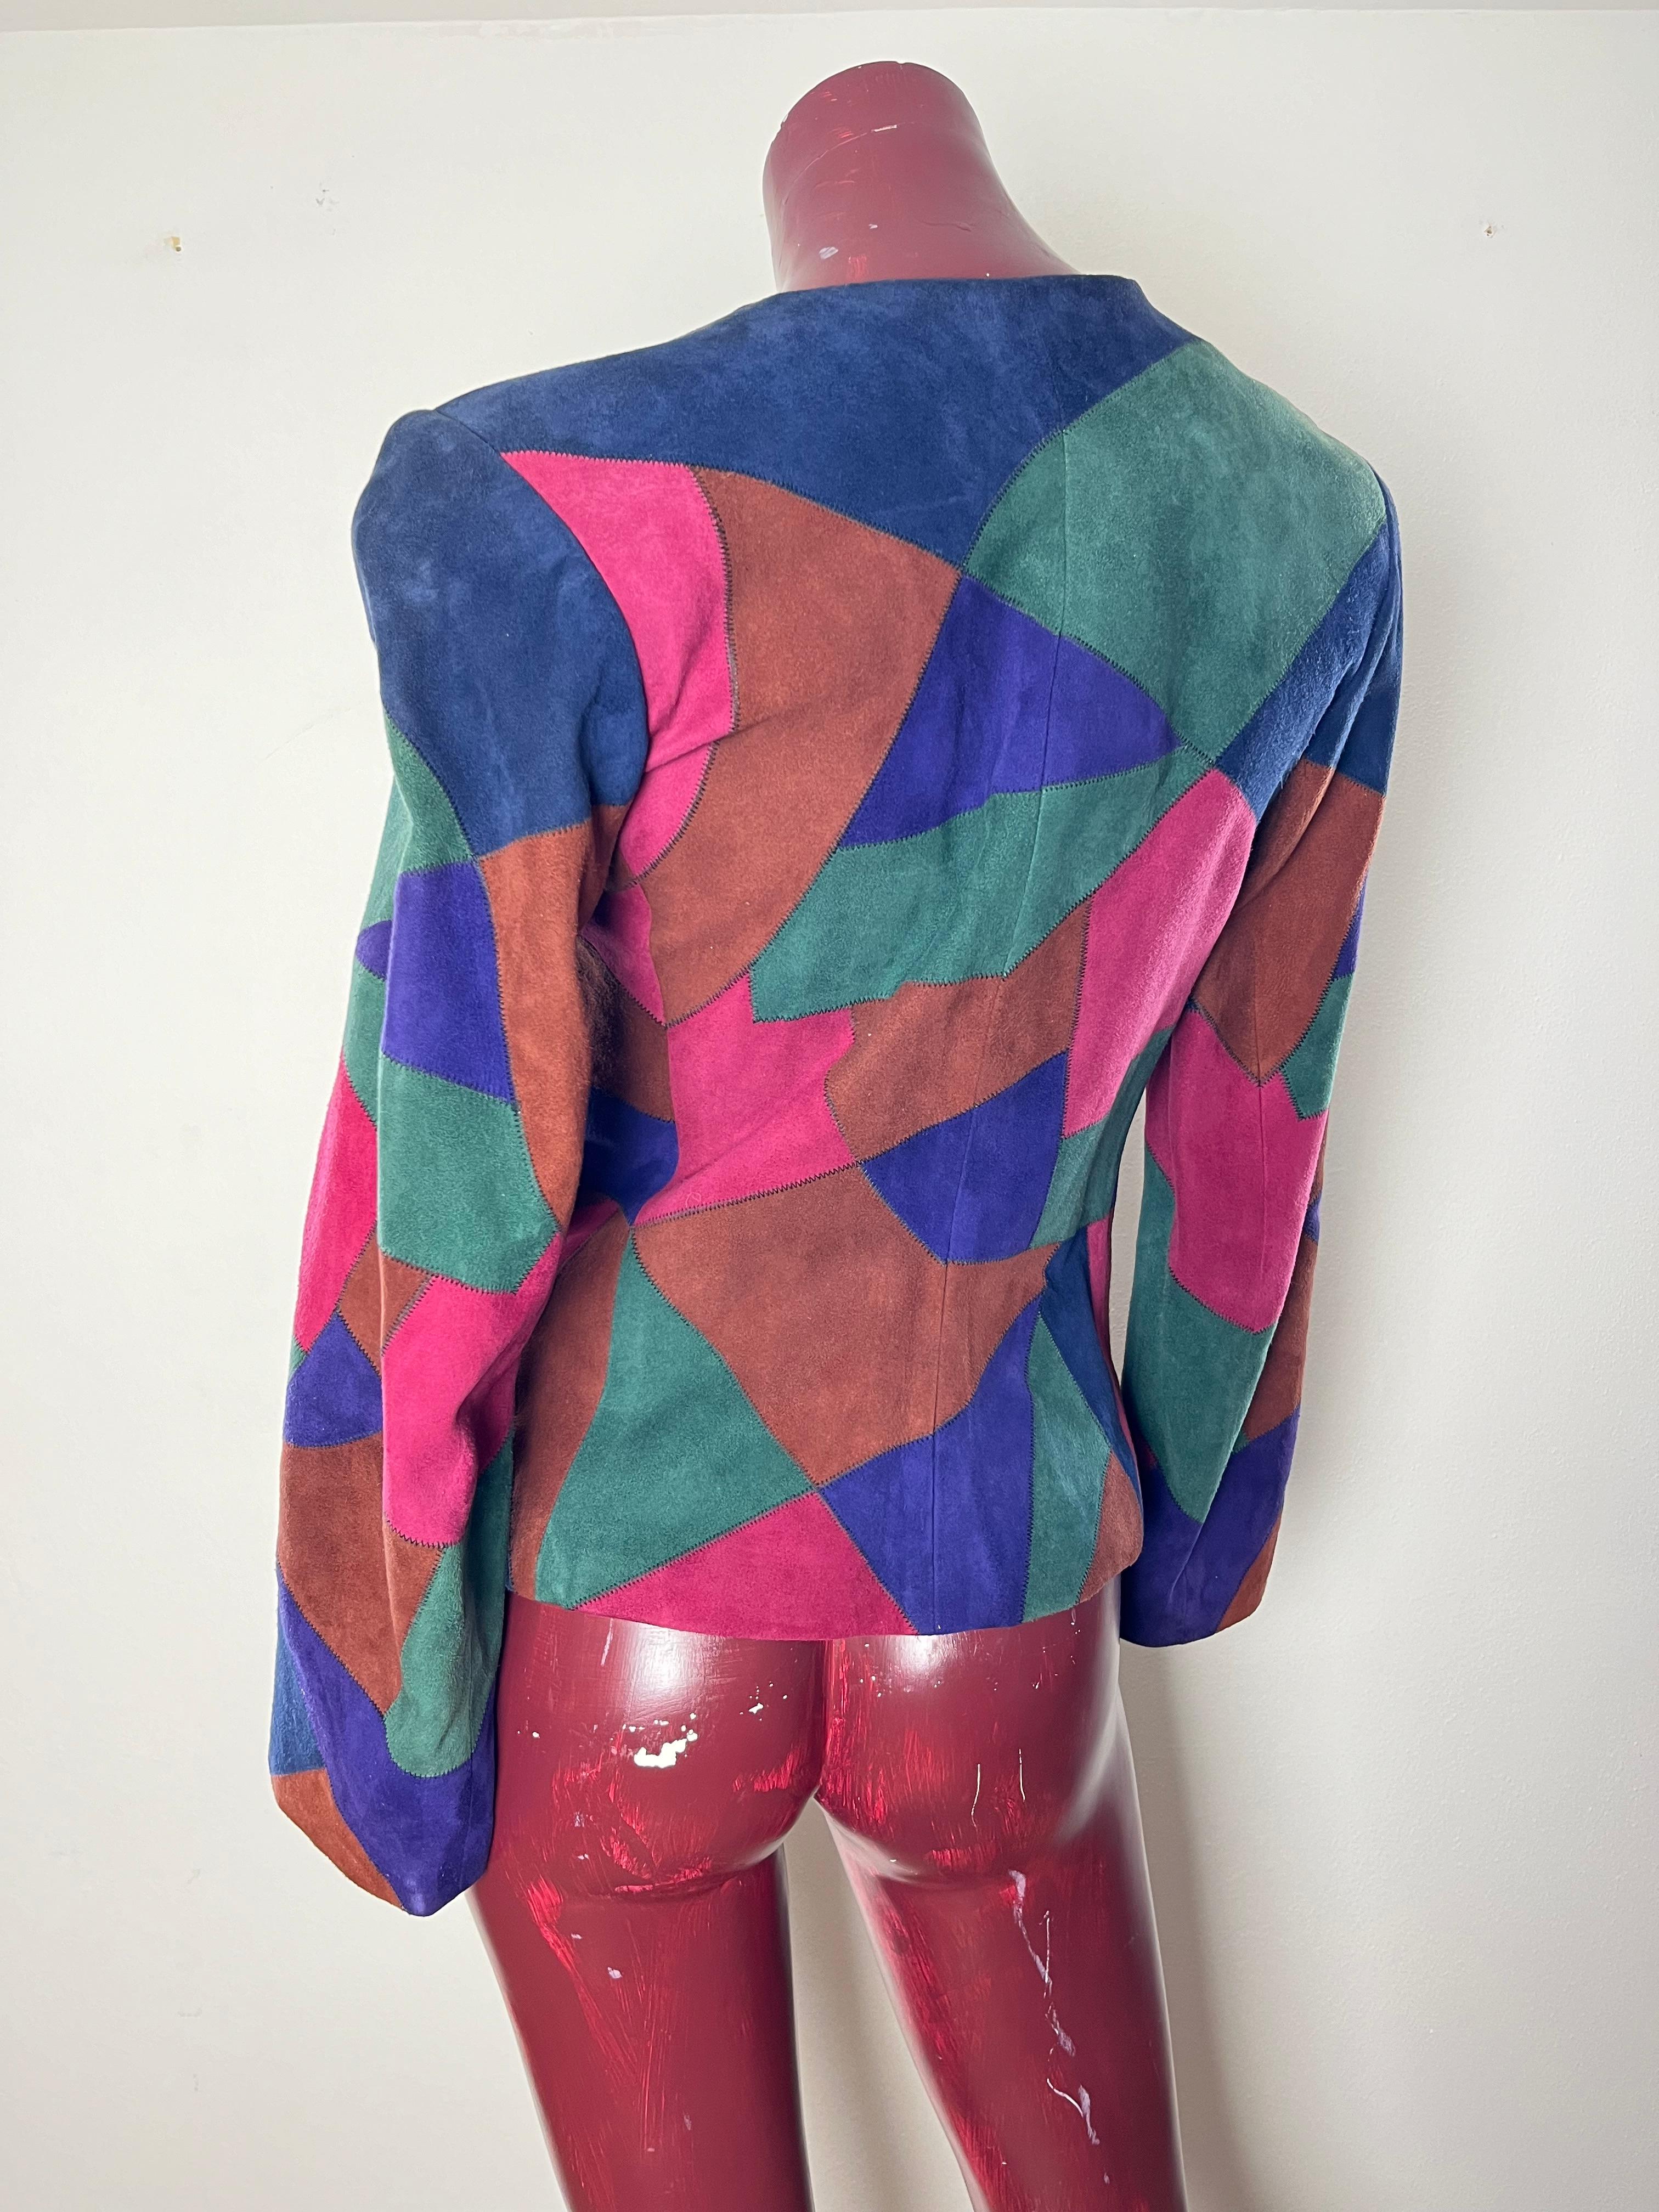 Giacca  YSL  anni 1980 
Questa giacca Rive Gauche Saint Laurent ricorda molto Tina Chow
icona di stile e musa di Yves Saint Laurent, Tina Chow. Bonne-Vivante e regina della discoteca degli anni '80, Chow era il tipo di donna che rendeva gli abiti